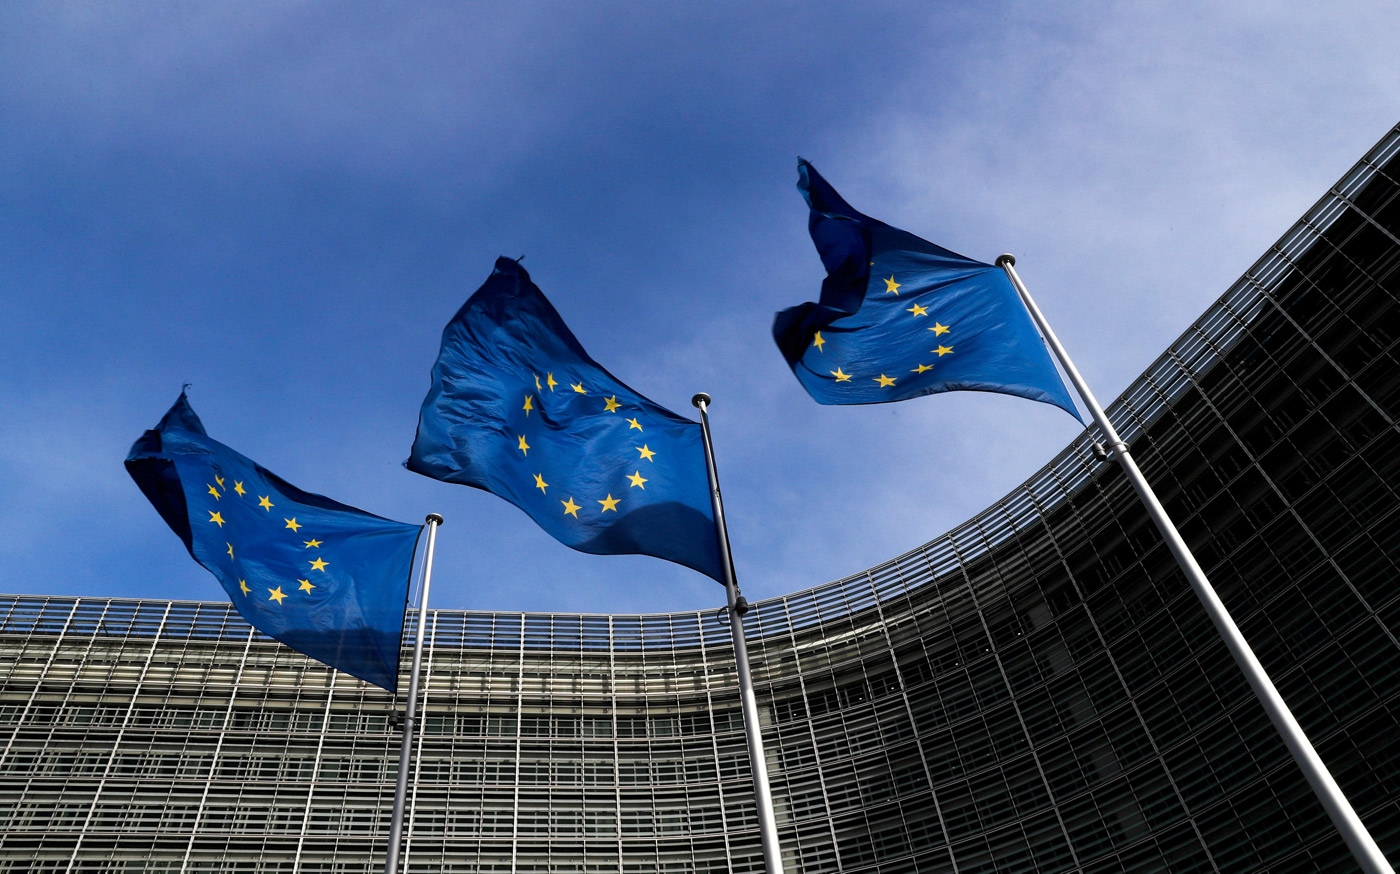 Prórroga del Brexit hasta el 30 de junio implicaría un grave riesgo, dice Comisión Europea